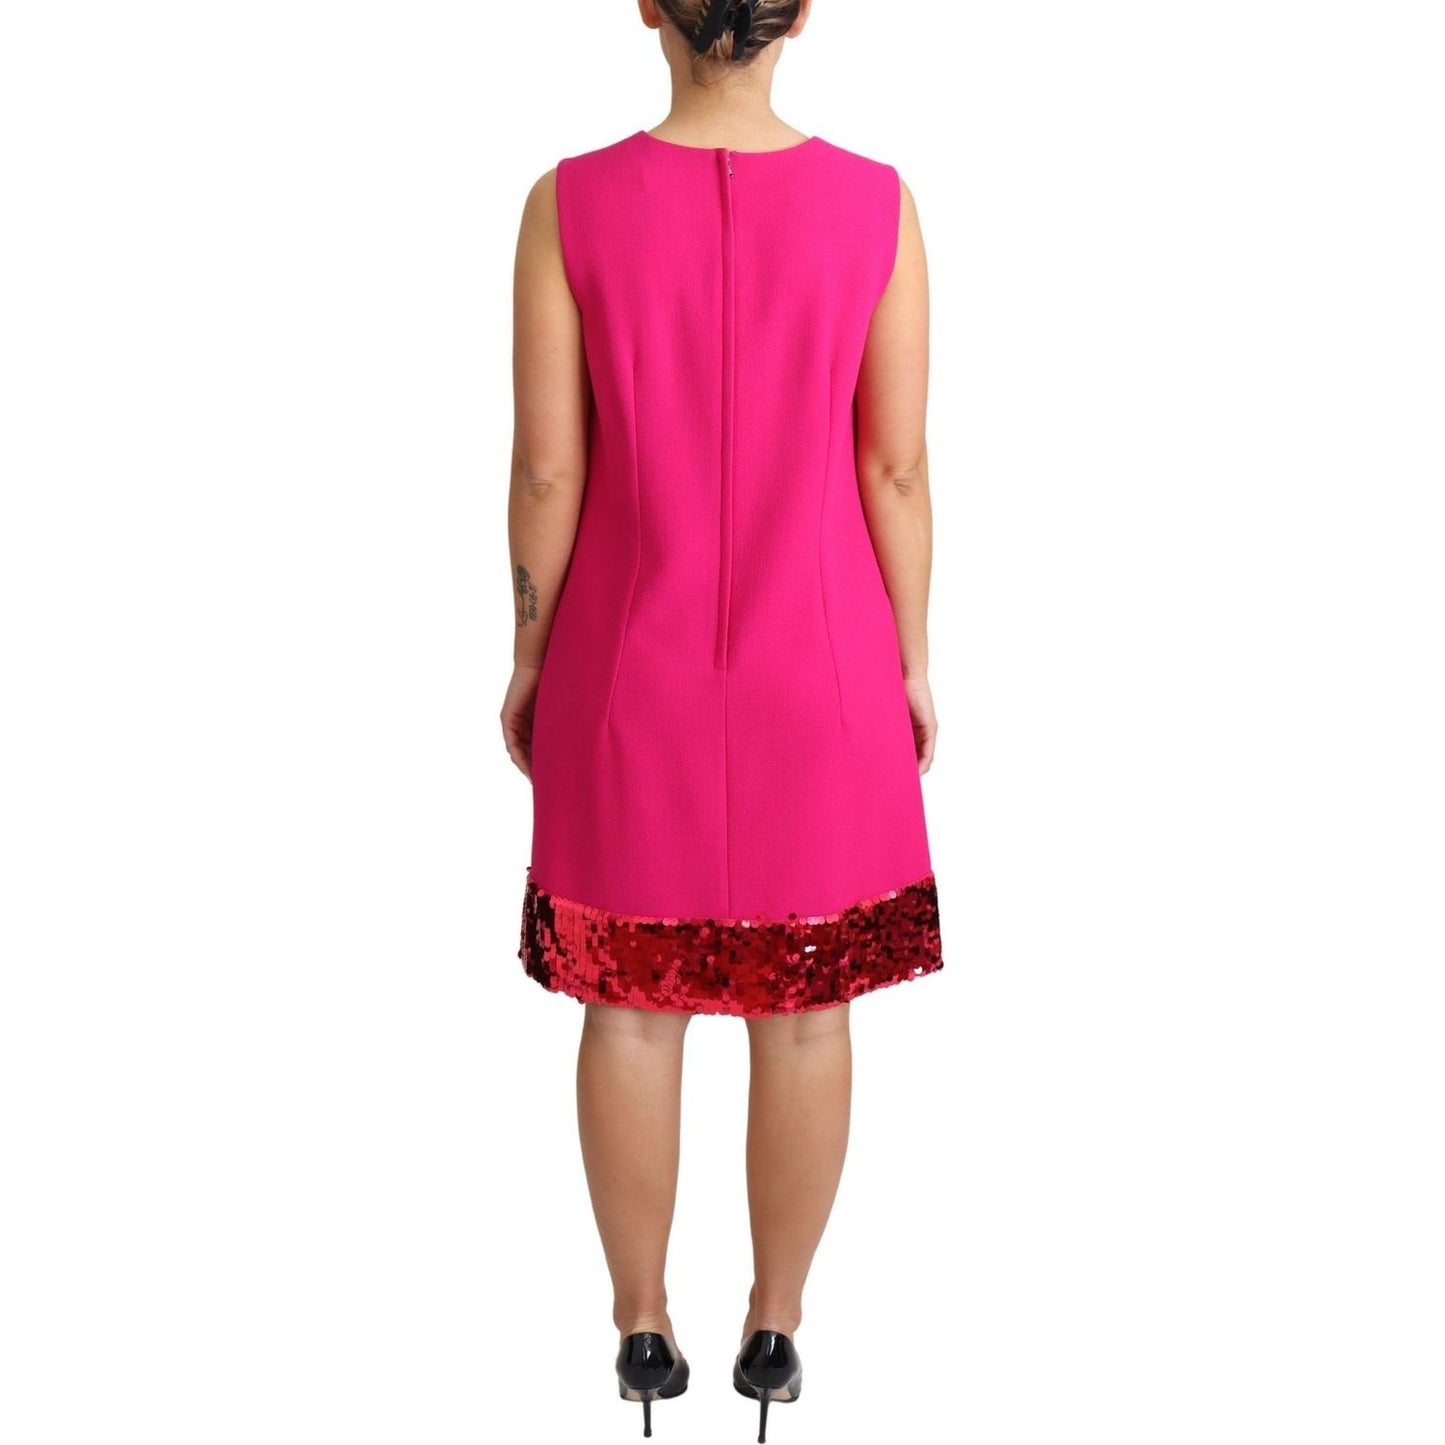 Dolce & Gabbana | Fuchsia Wool Sequin Shift Sleeveless Dress | 639.00 - McRichard Designer Brands